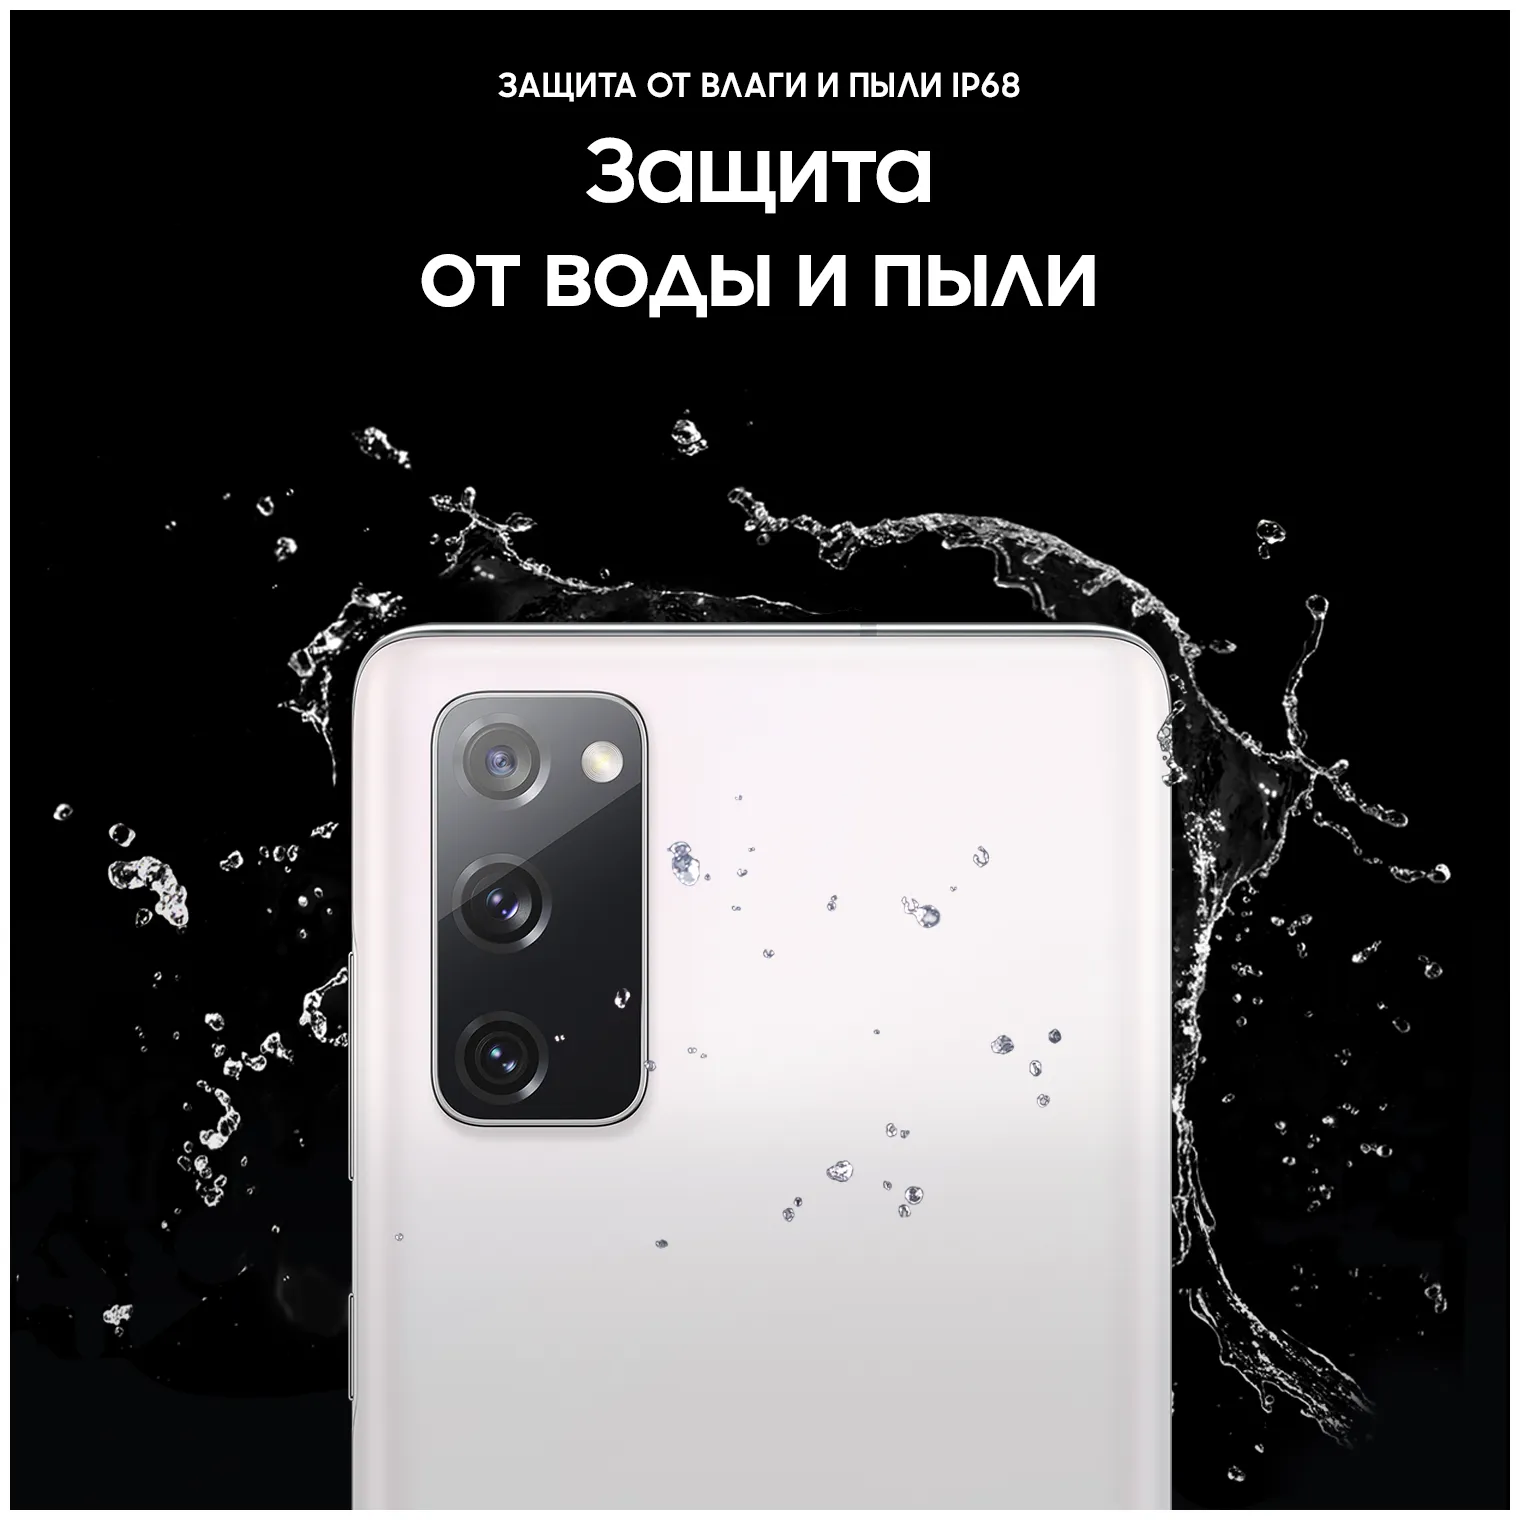 Samsung Galaxy S20 FE (SM-G780G) 6/128 ГБ, белый#13